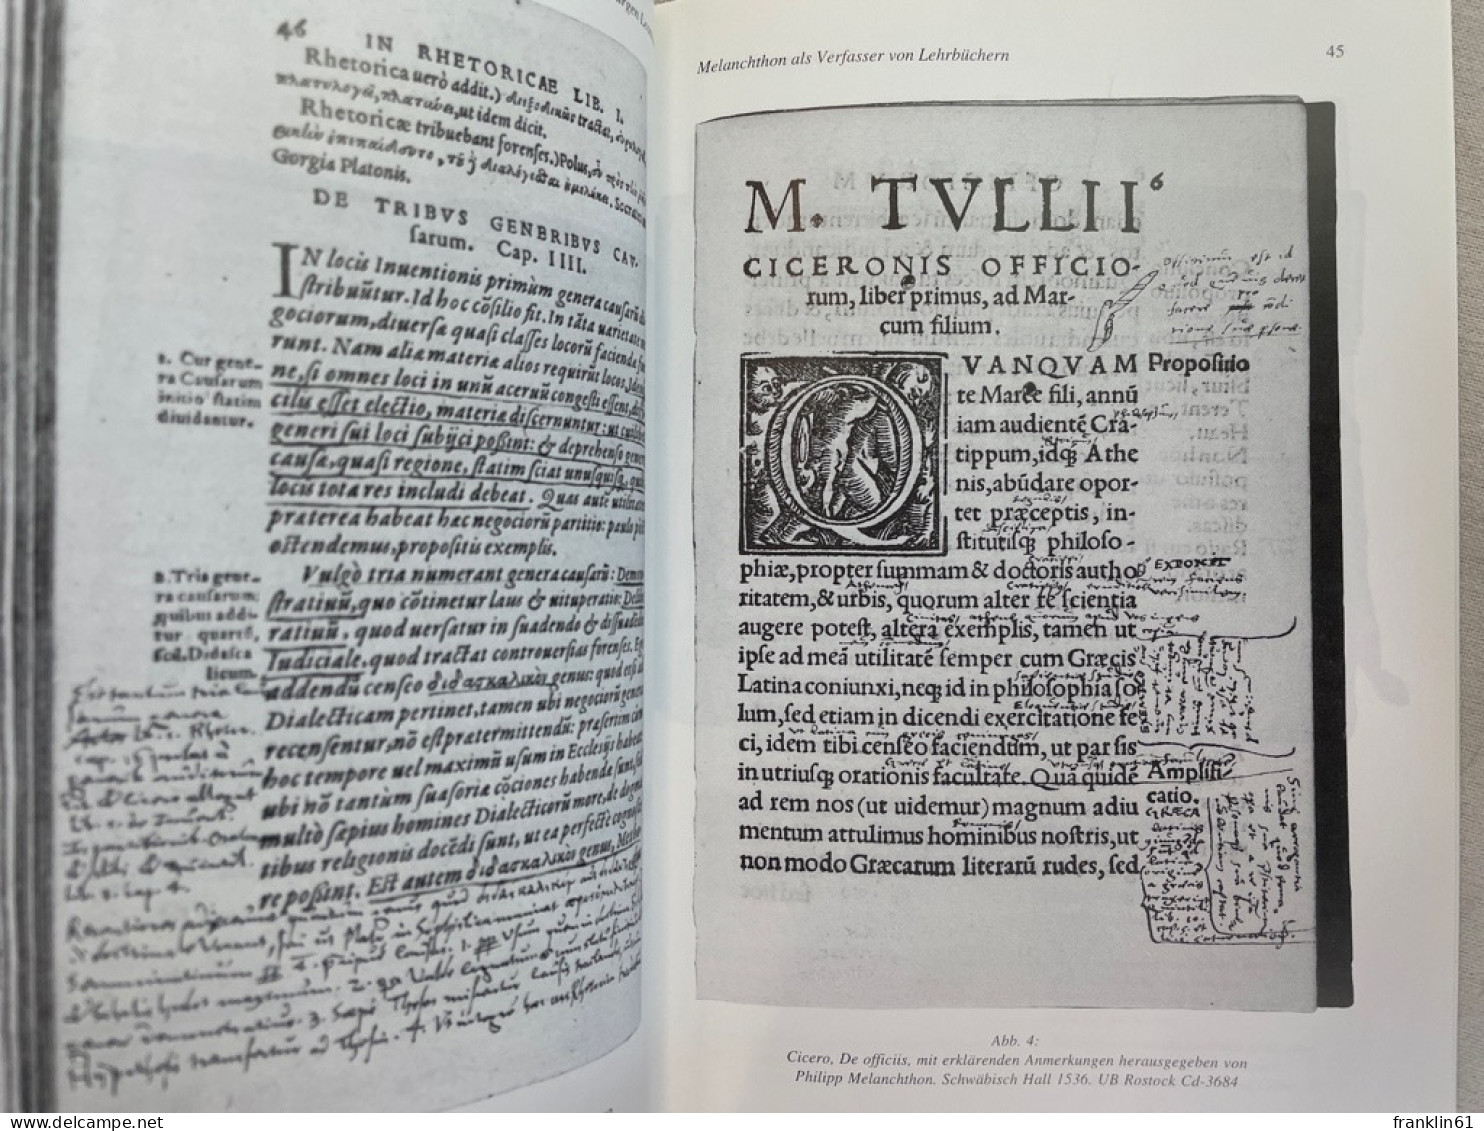 500 Jahre Philipp Melanchthon (1497 - 1560) : Akten des interdisziplinären Symposions vom 25. - 27. April 199